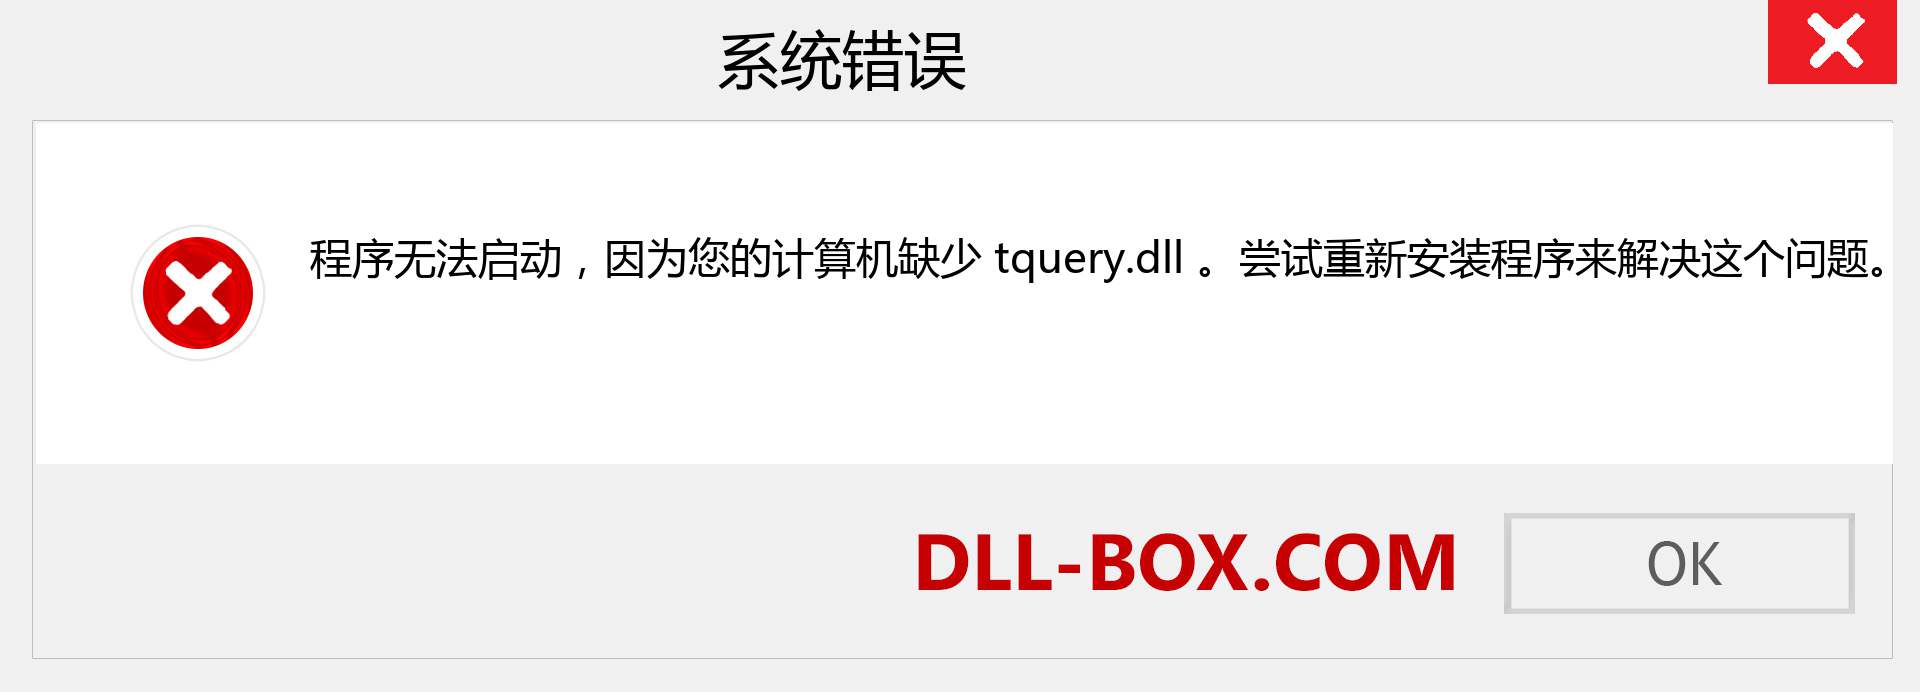 tquery.dll 文件丢失？。 适用于 Windows 7、8、10 的下载 - 修复 Windows、照片、图像上的 tquery dll 丢失错误